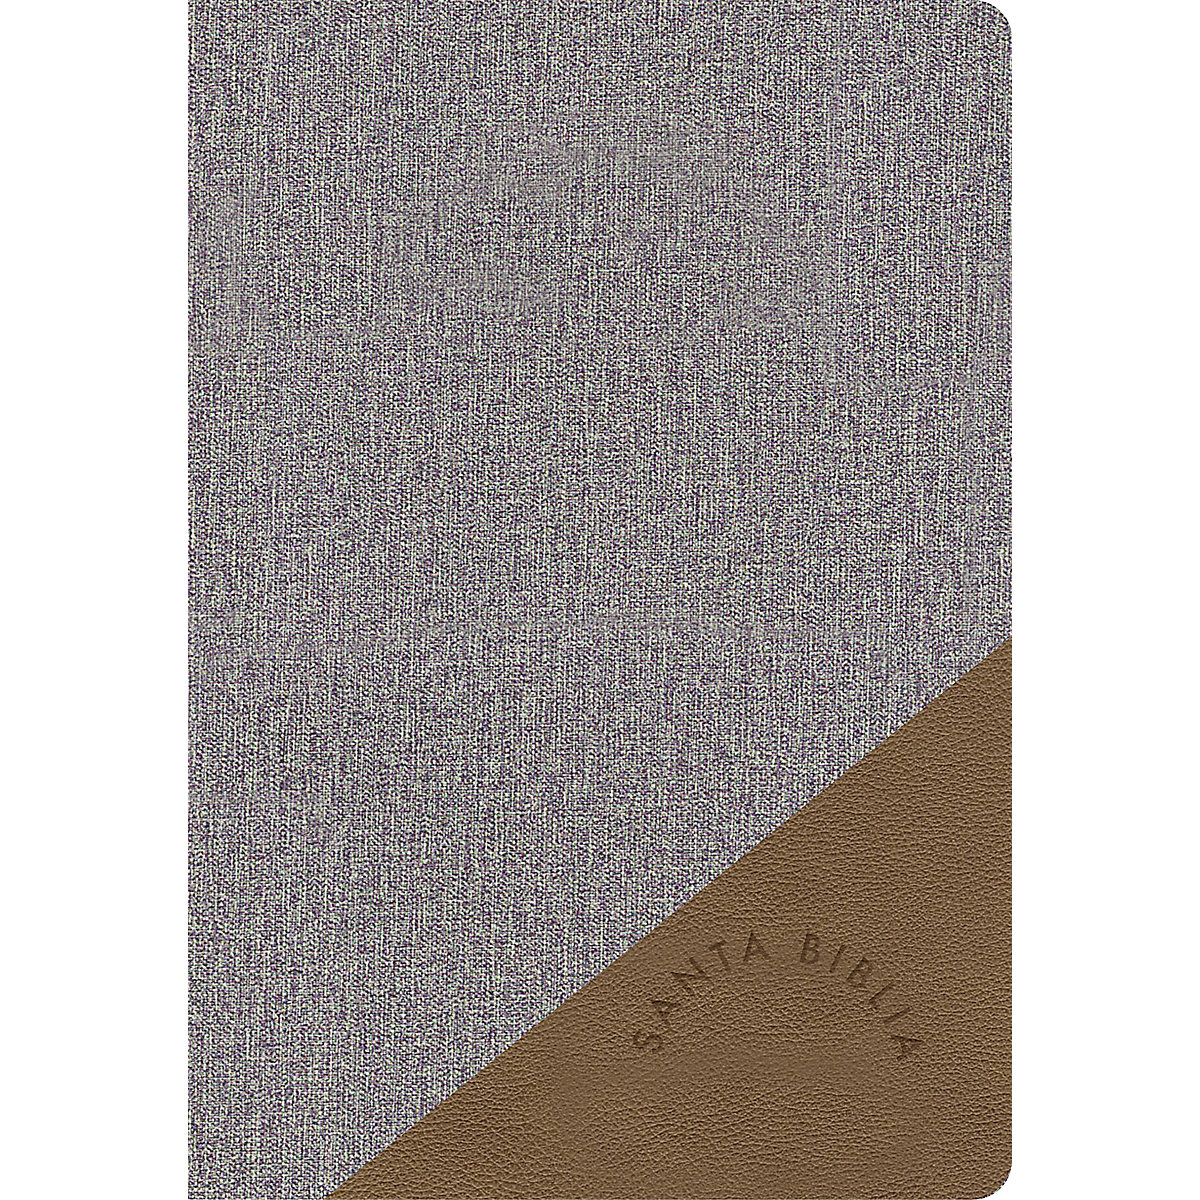 RVR 1960 Biblia Letra Grande Tamaño Manual gris y marrón, símil piel